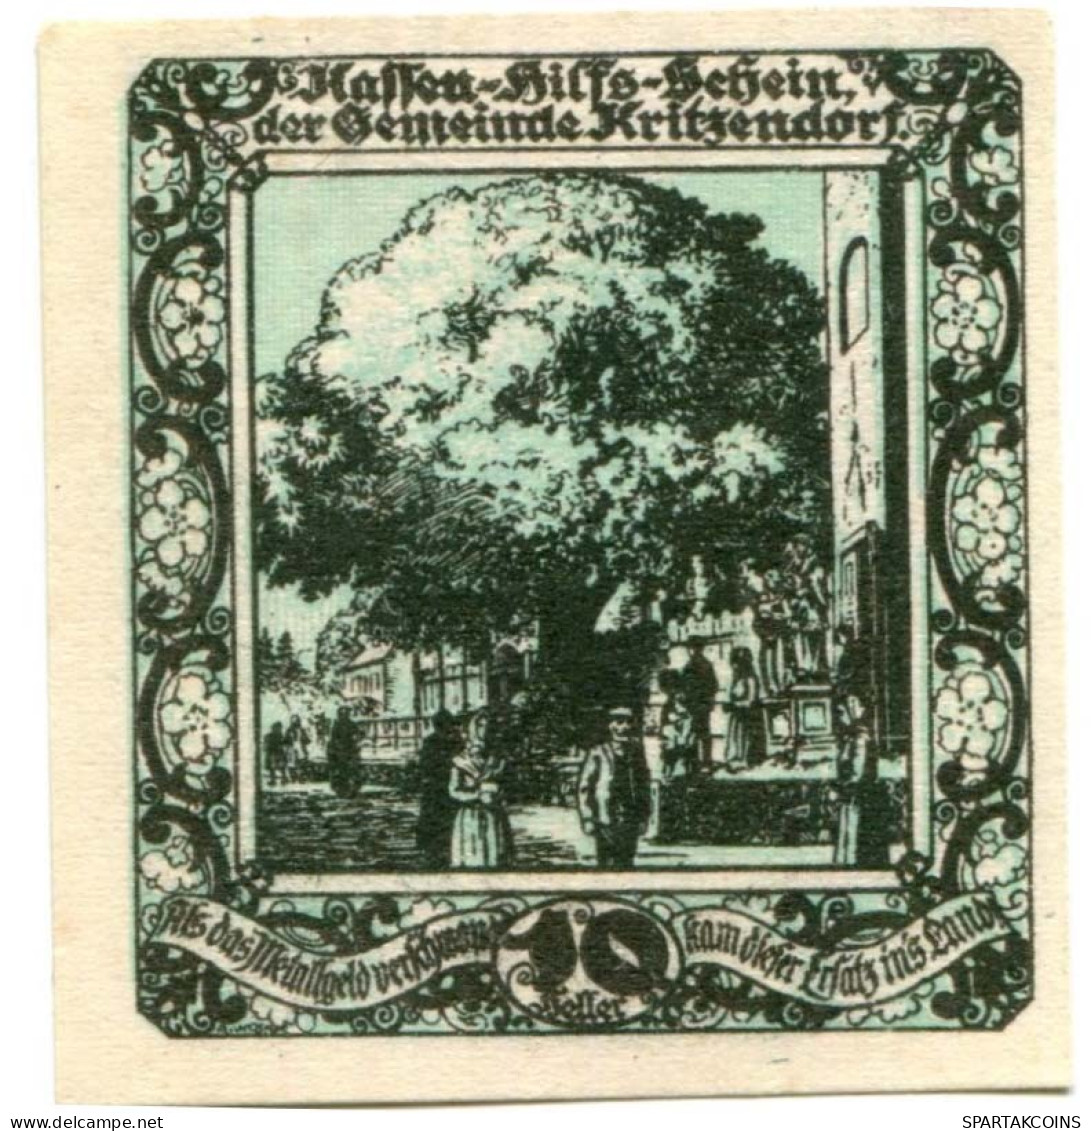 10 HELLER 1920 Stadt KRITZENDORF Niedrigeren Österreich Notgeld Papiergeld Banknote #PL659 - [11] Emisiones Locales